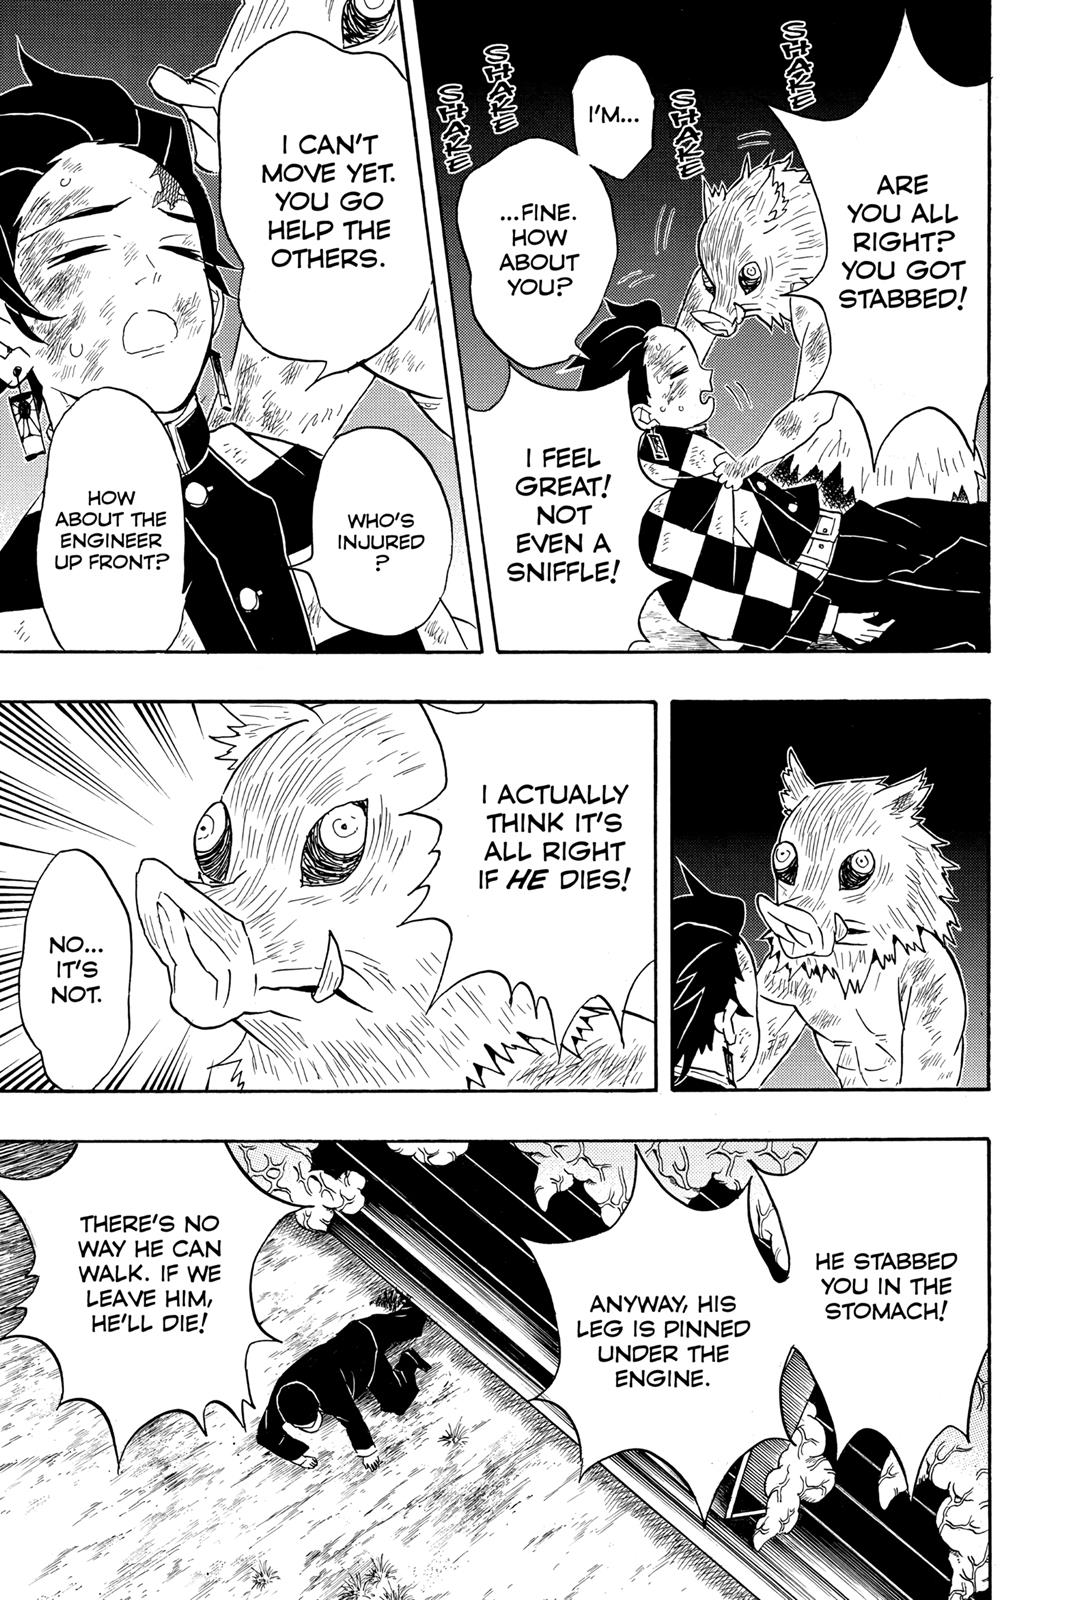 Demon Slayer Manga Manga Chapter - 62 - image 10